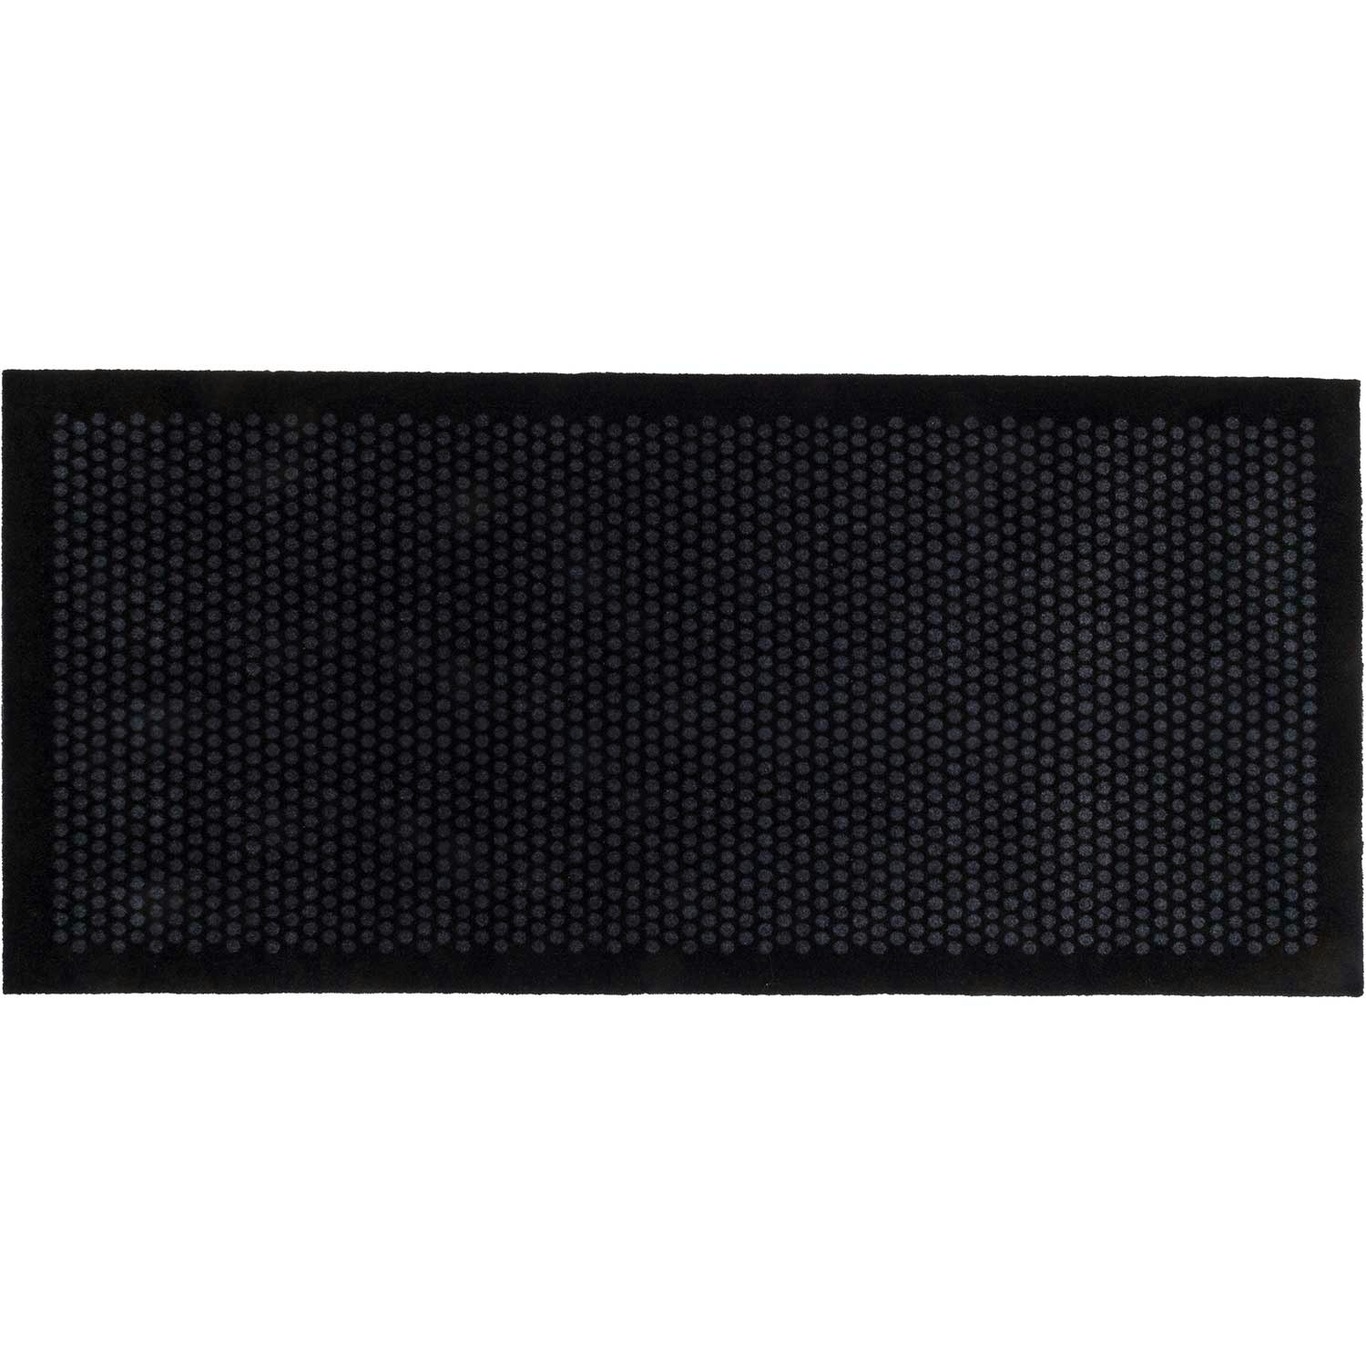 Dot Doormat 90x200cm, Black/Grey